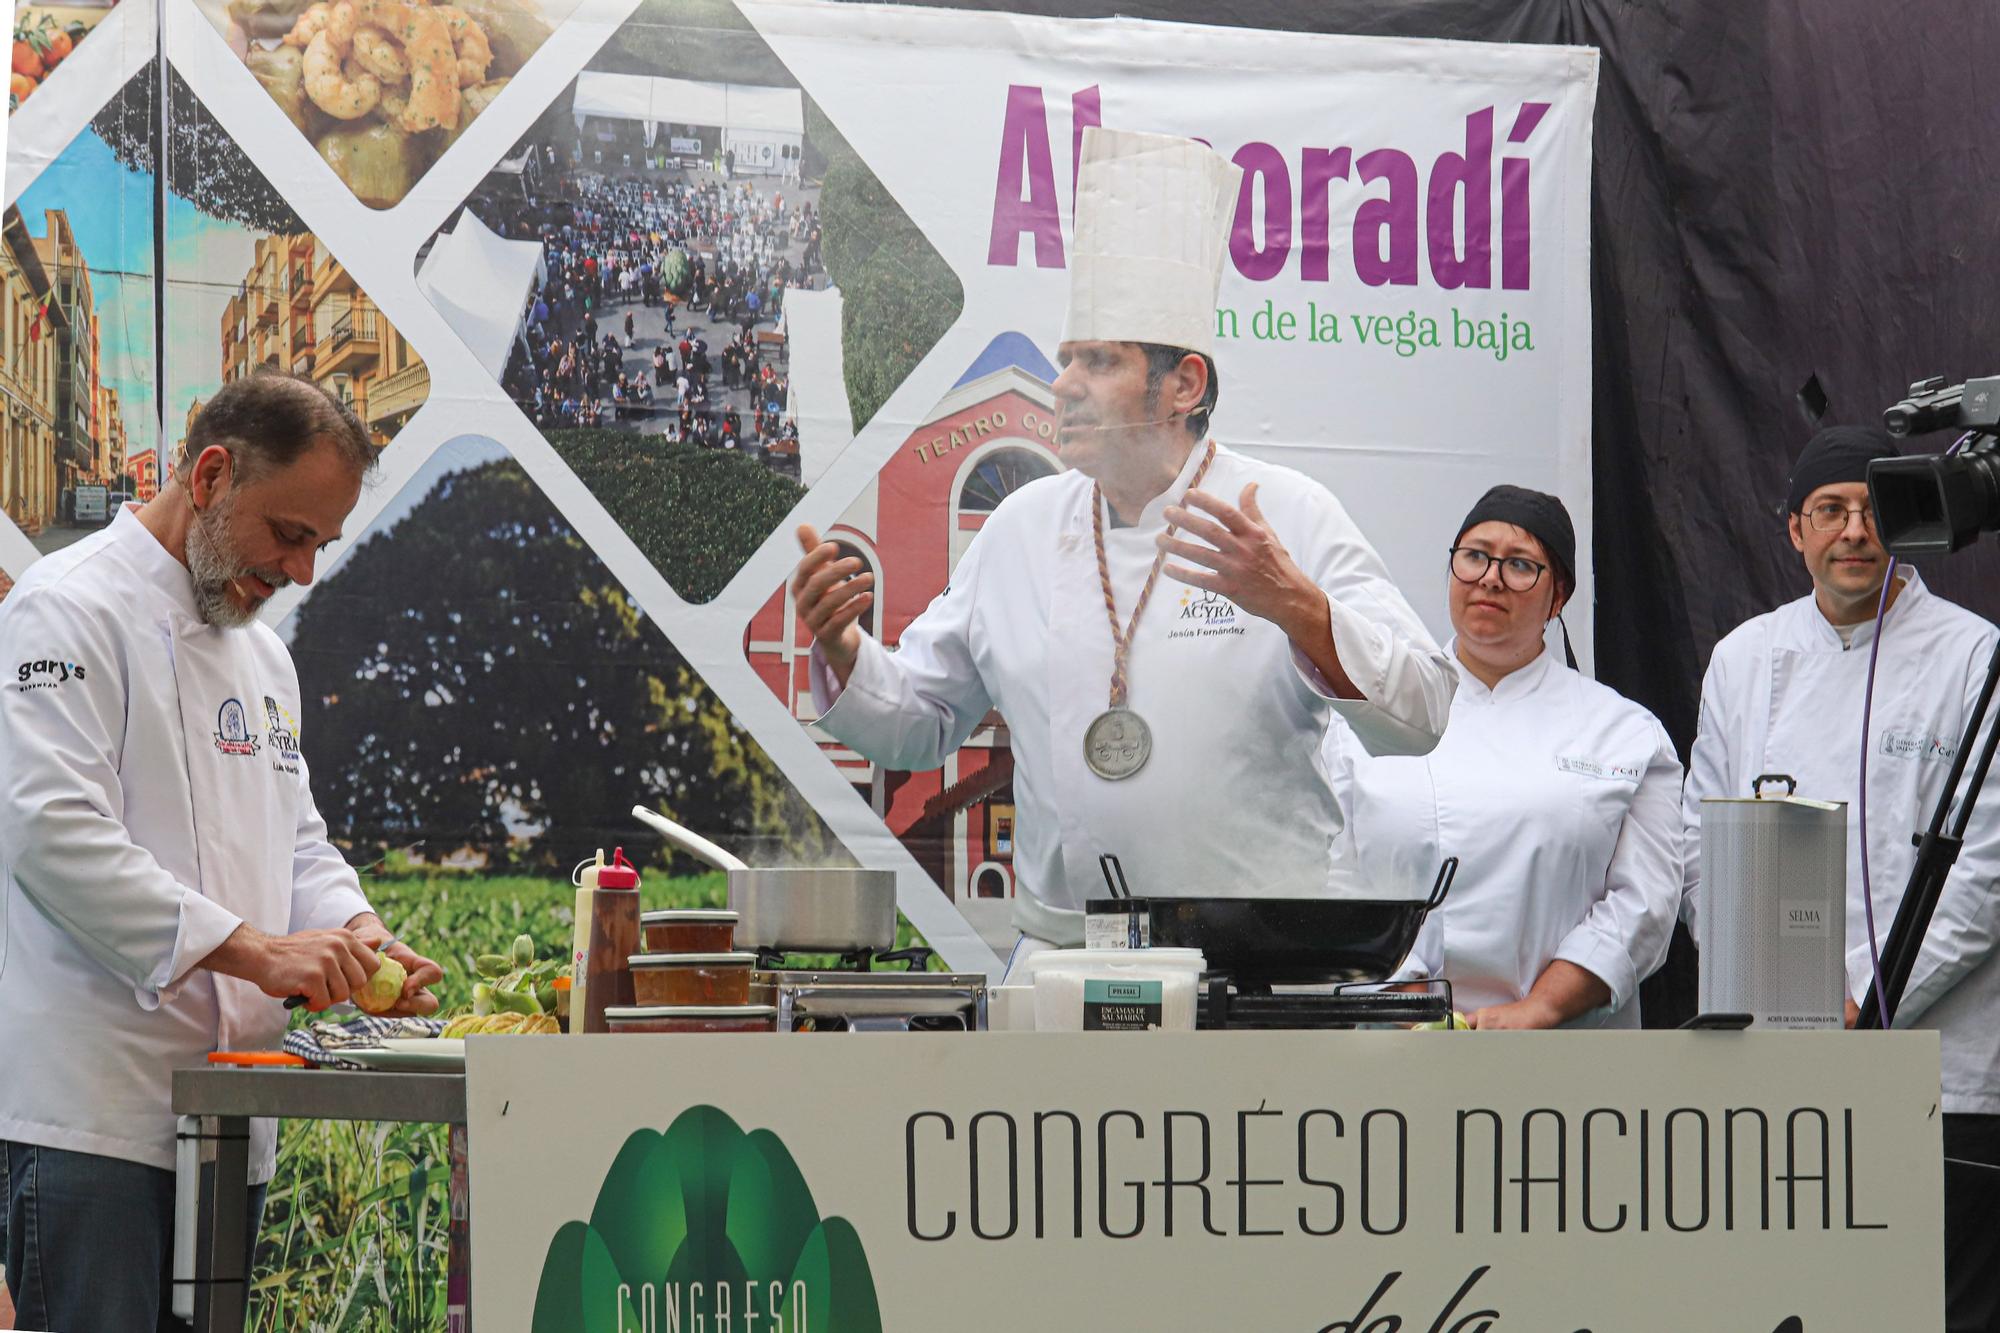 8ª Congreso Nacional de la Alcachofa en Almoradí